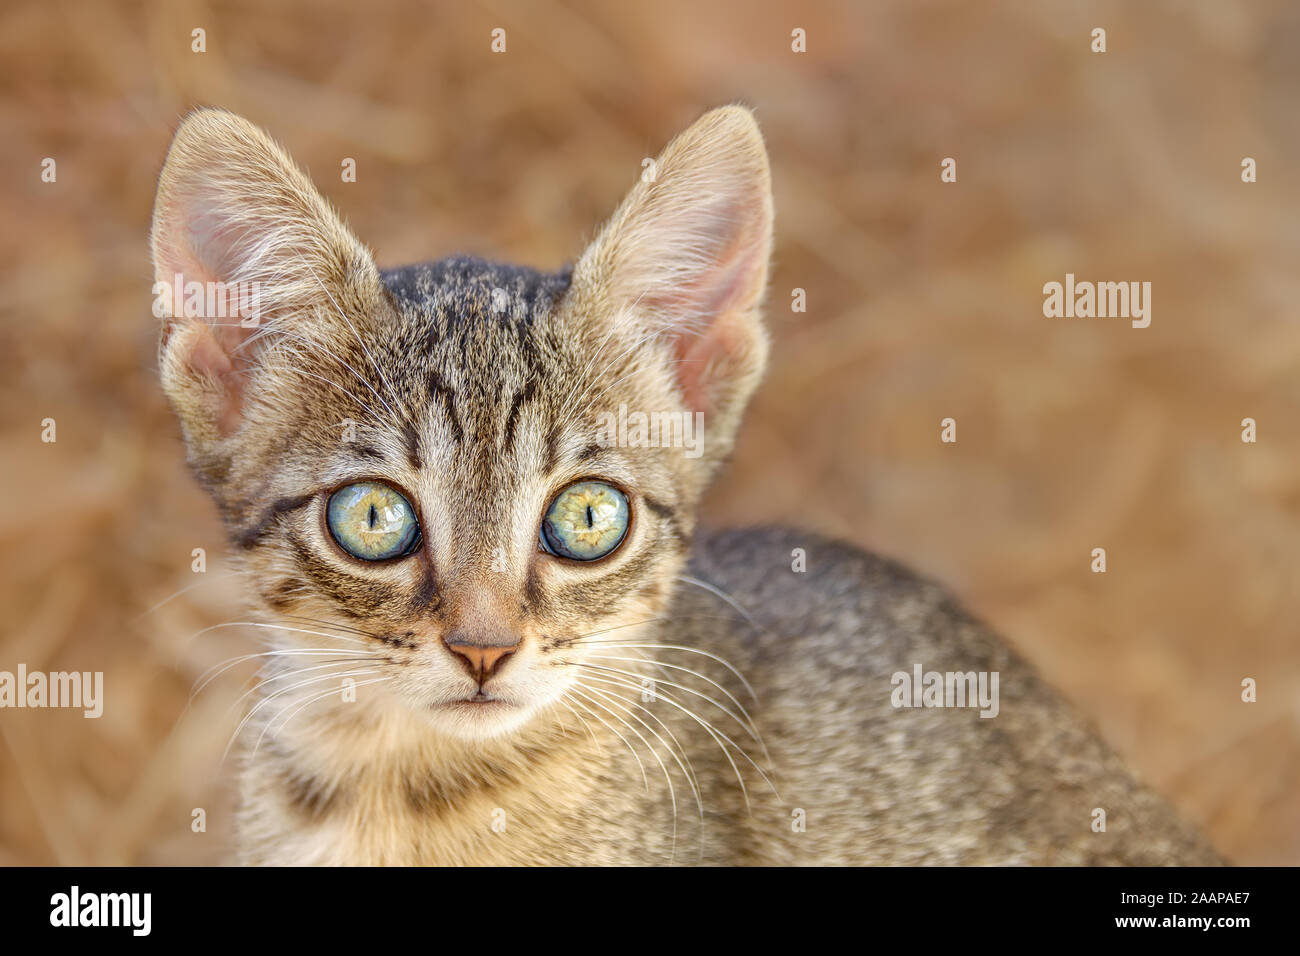 Carino giovane brown tabby gattino guardando attentamente con colori bellissimi occhi grandi, un close-up ritratto, Grecia, Europa Foto Stock